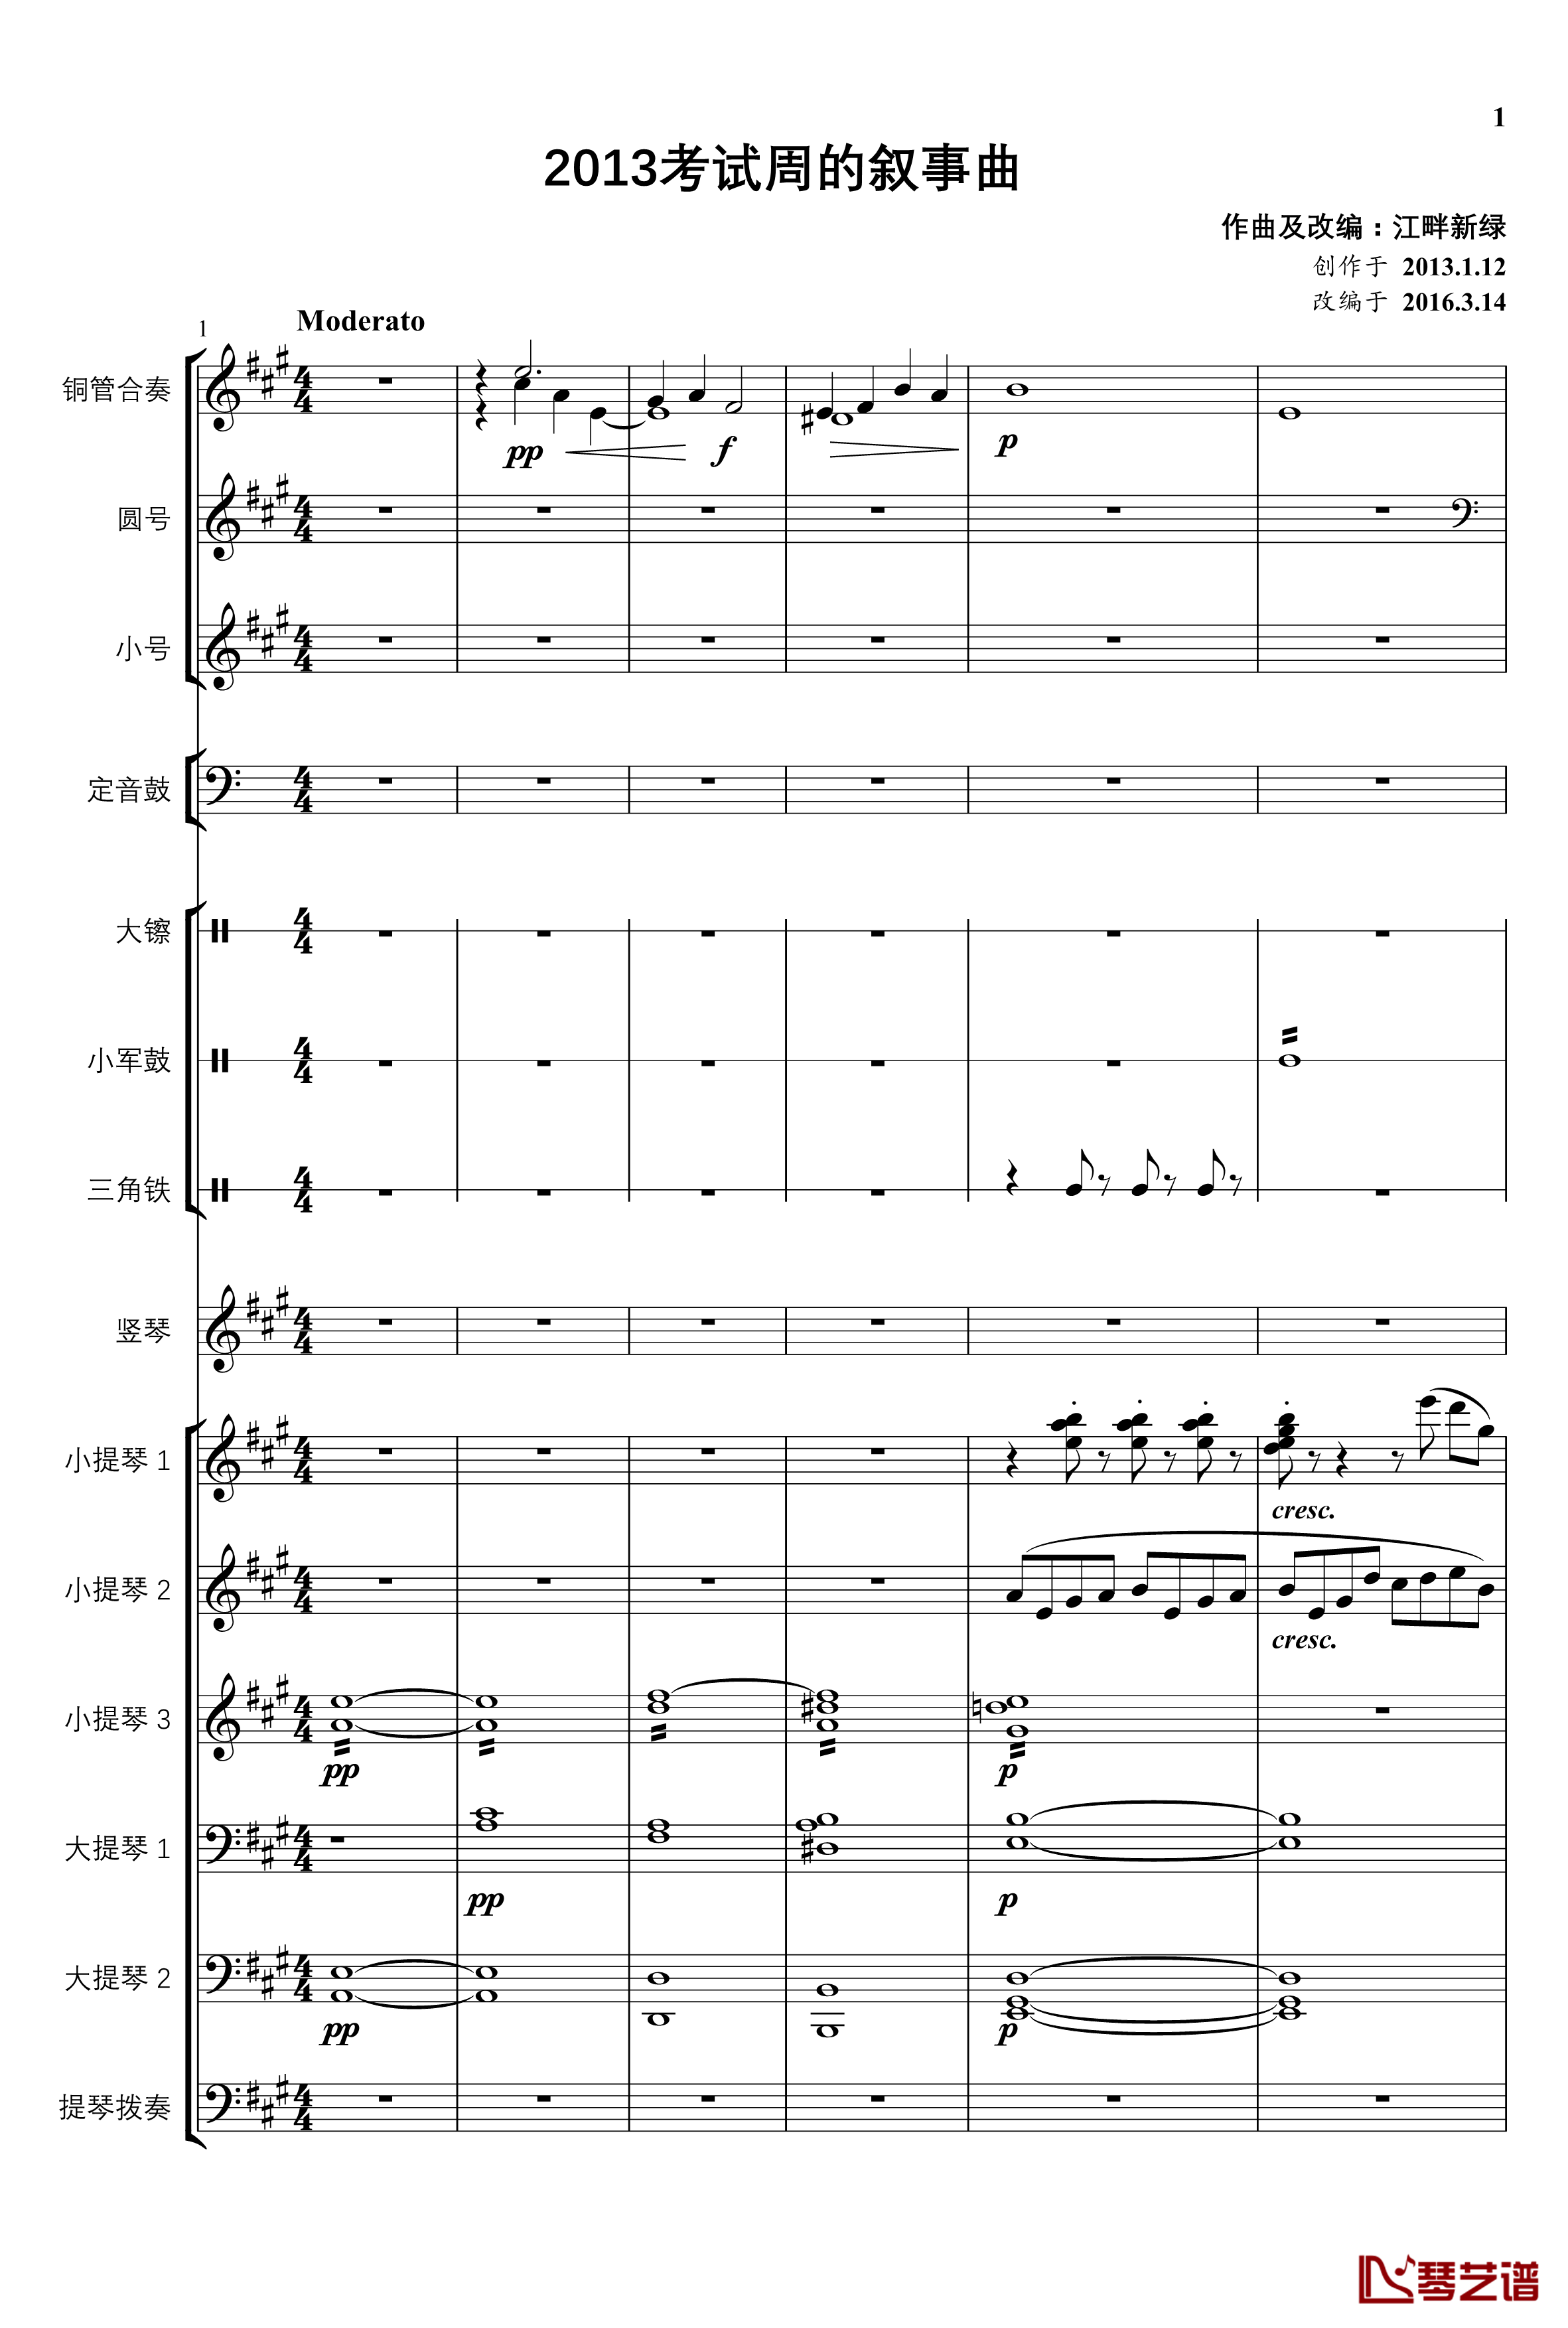 2013考试周的叙事曲钢琴谱-管弦乐重编曲版-江畔新绿1